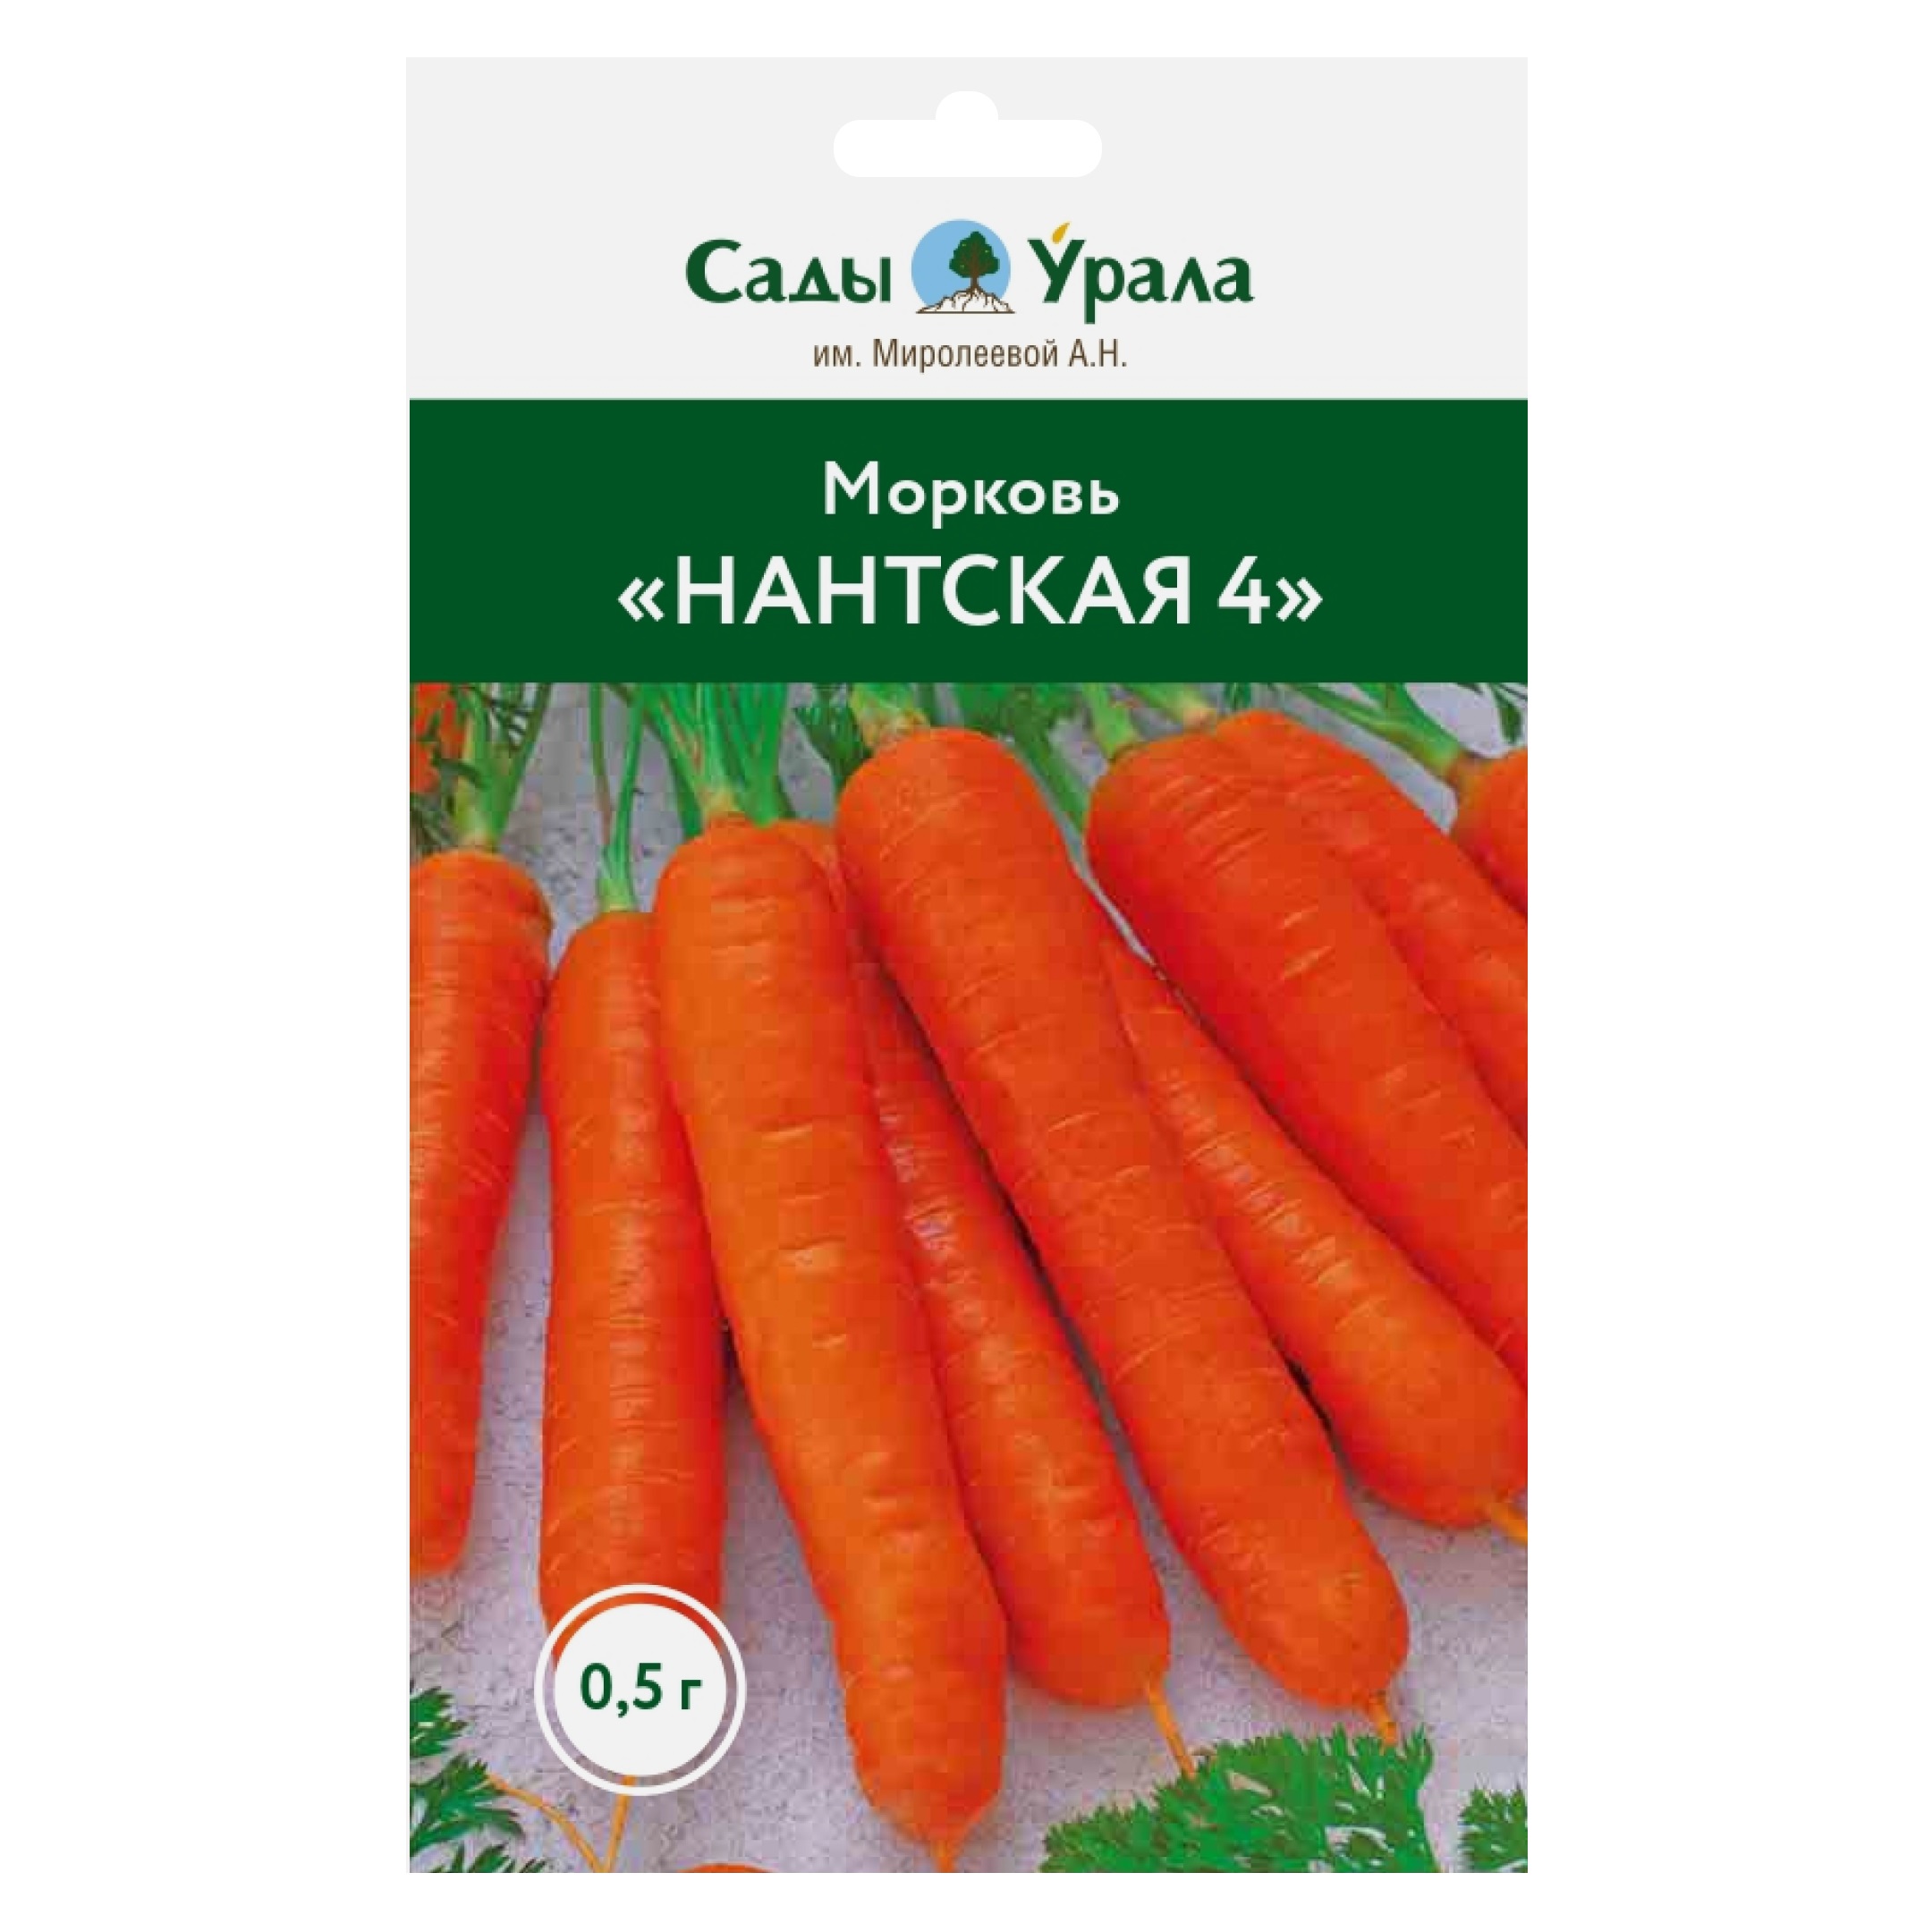 фото Семена овощей морковь «нантская 4», сады урала, 0,5 г